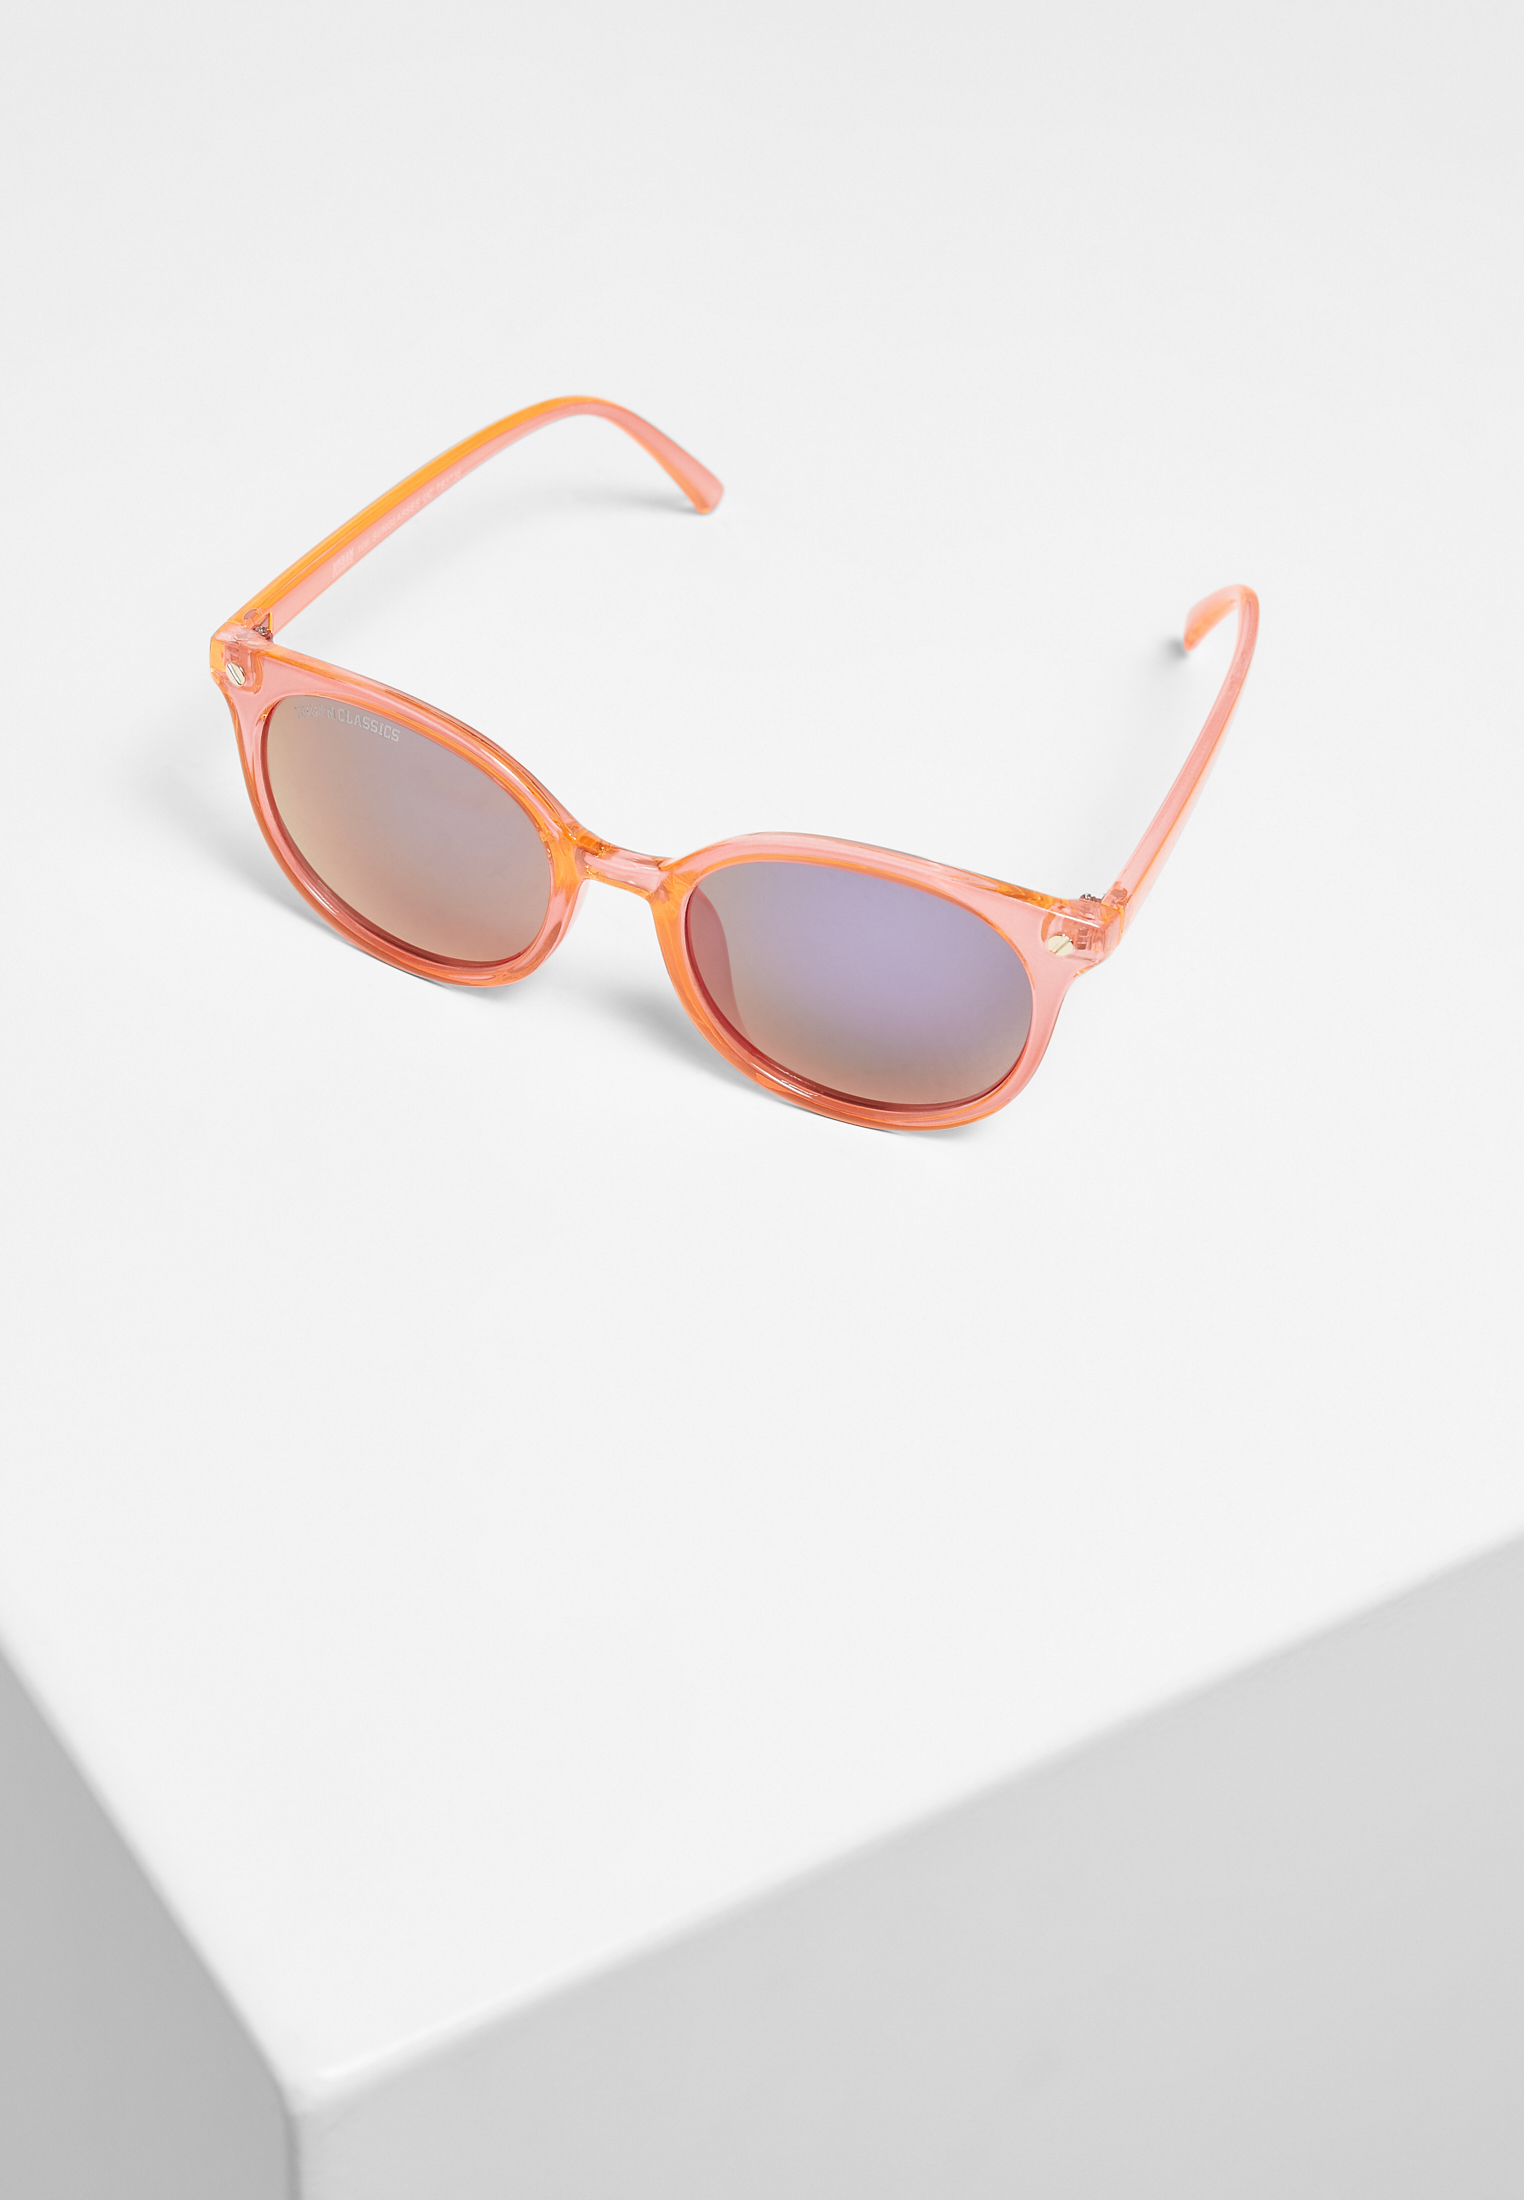 Sonnenbrillen 108 Sunglasses UC in Farbe neonorange/black